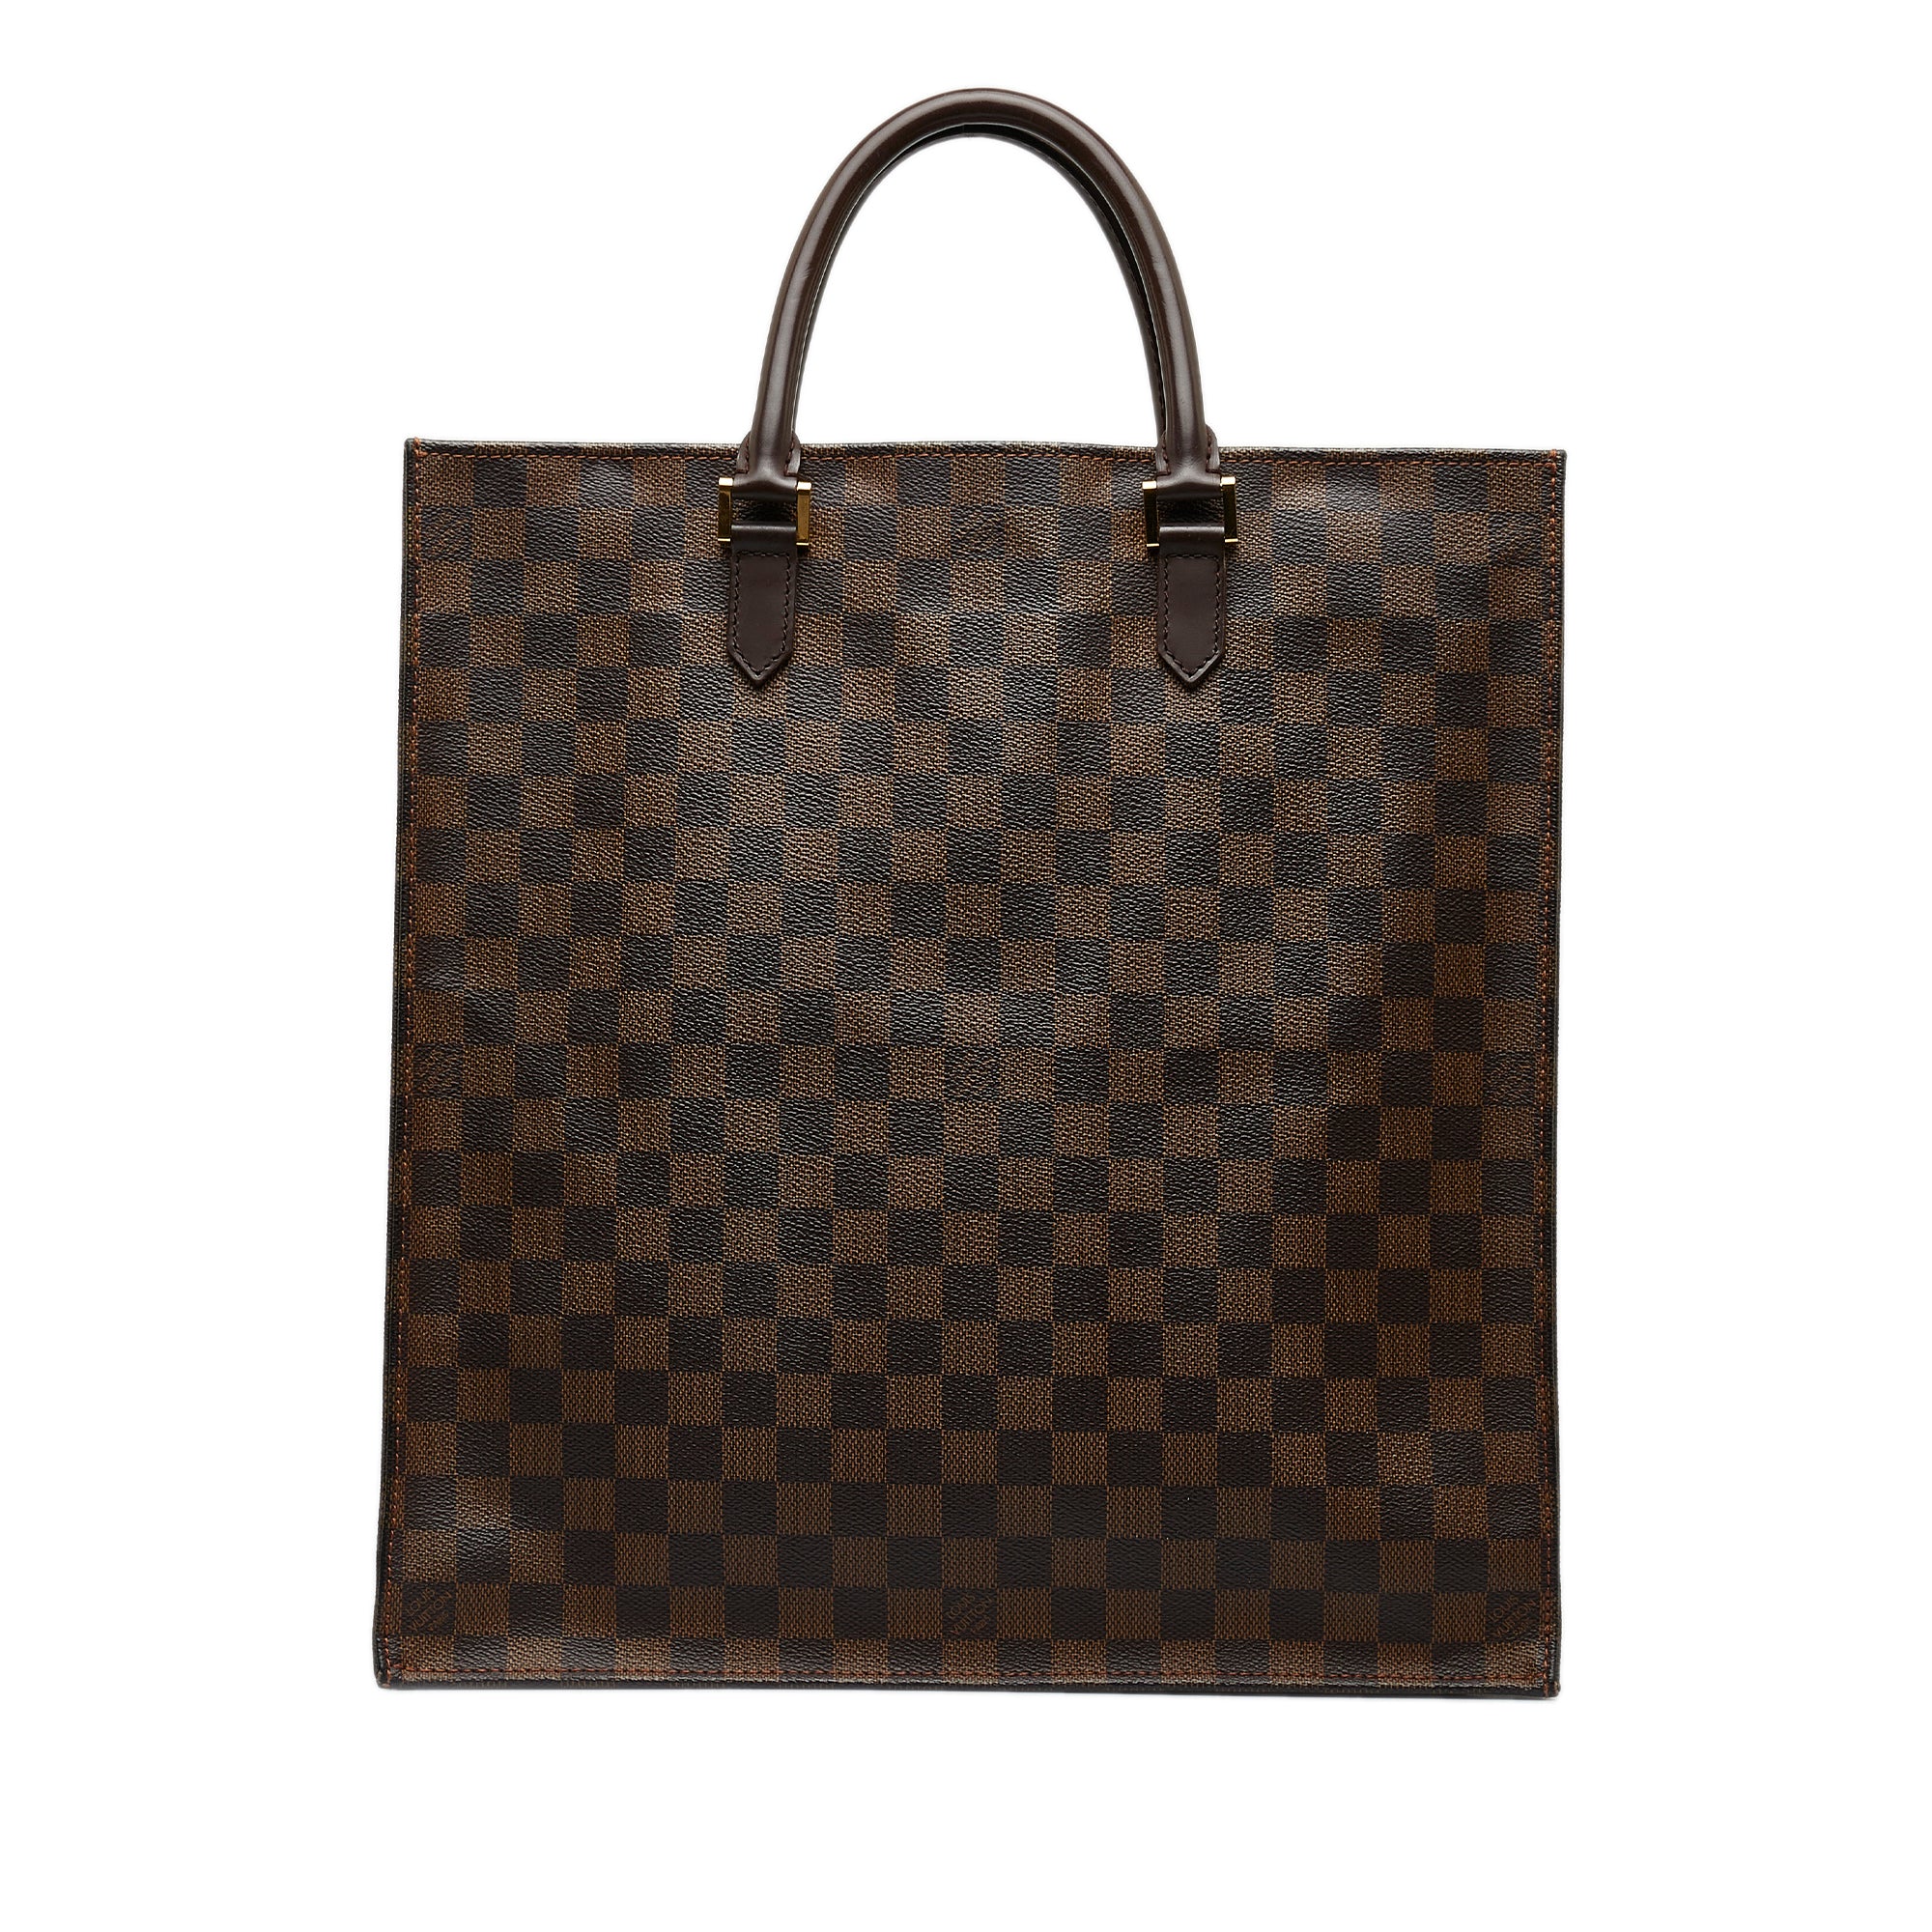 Louis Vuitton Damier Ebene Sac Plat - Brown Totes, Handbags